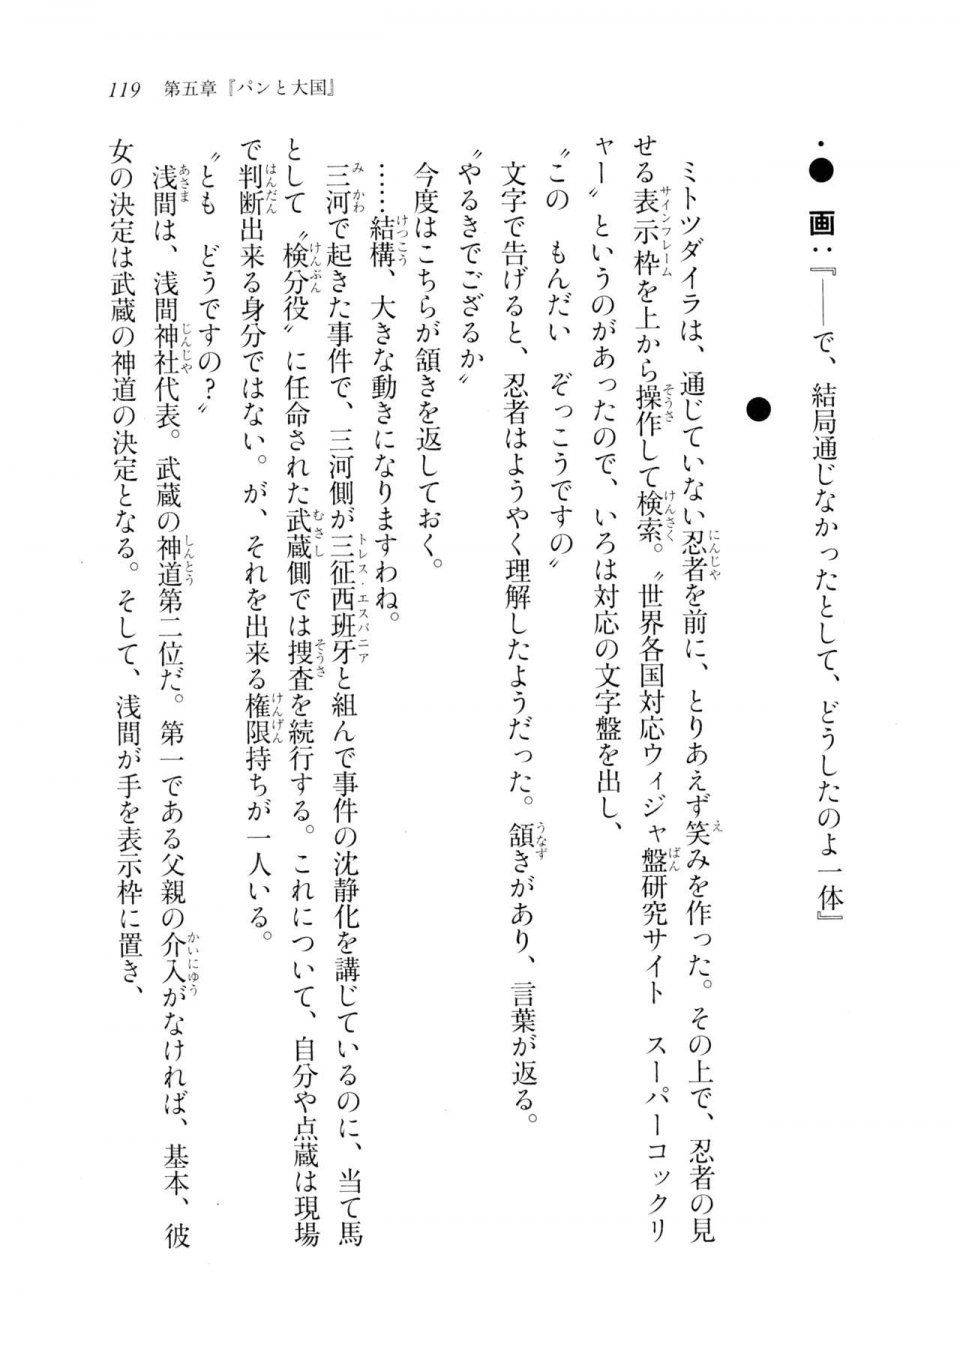 Kyoukai Senjou no Horizon LN Sidestory Vol 2 - Photo #117